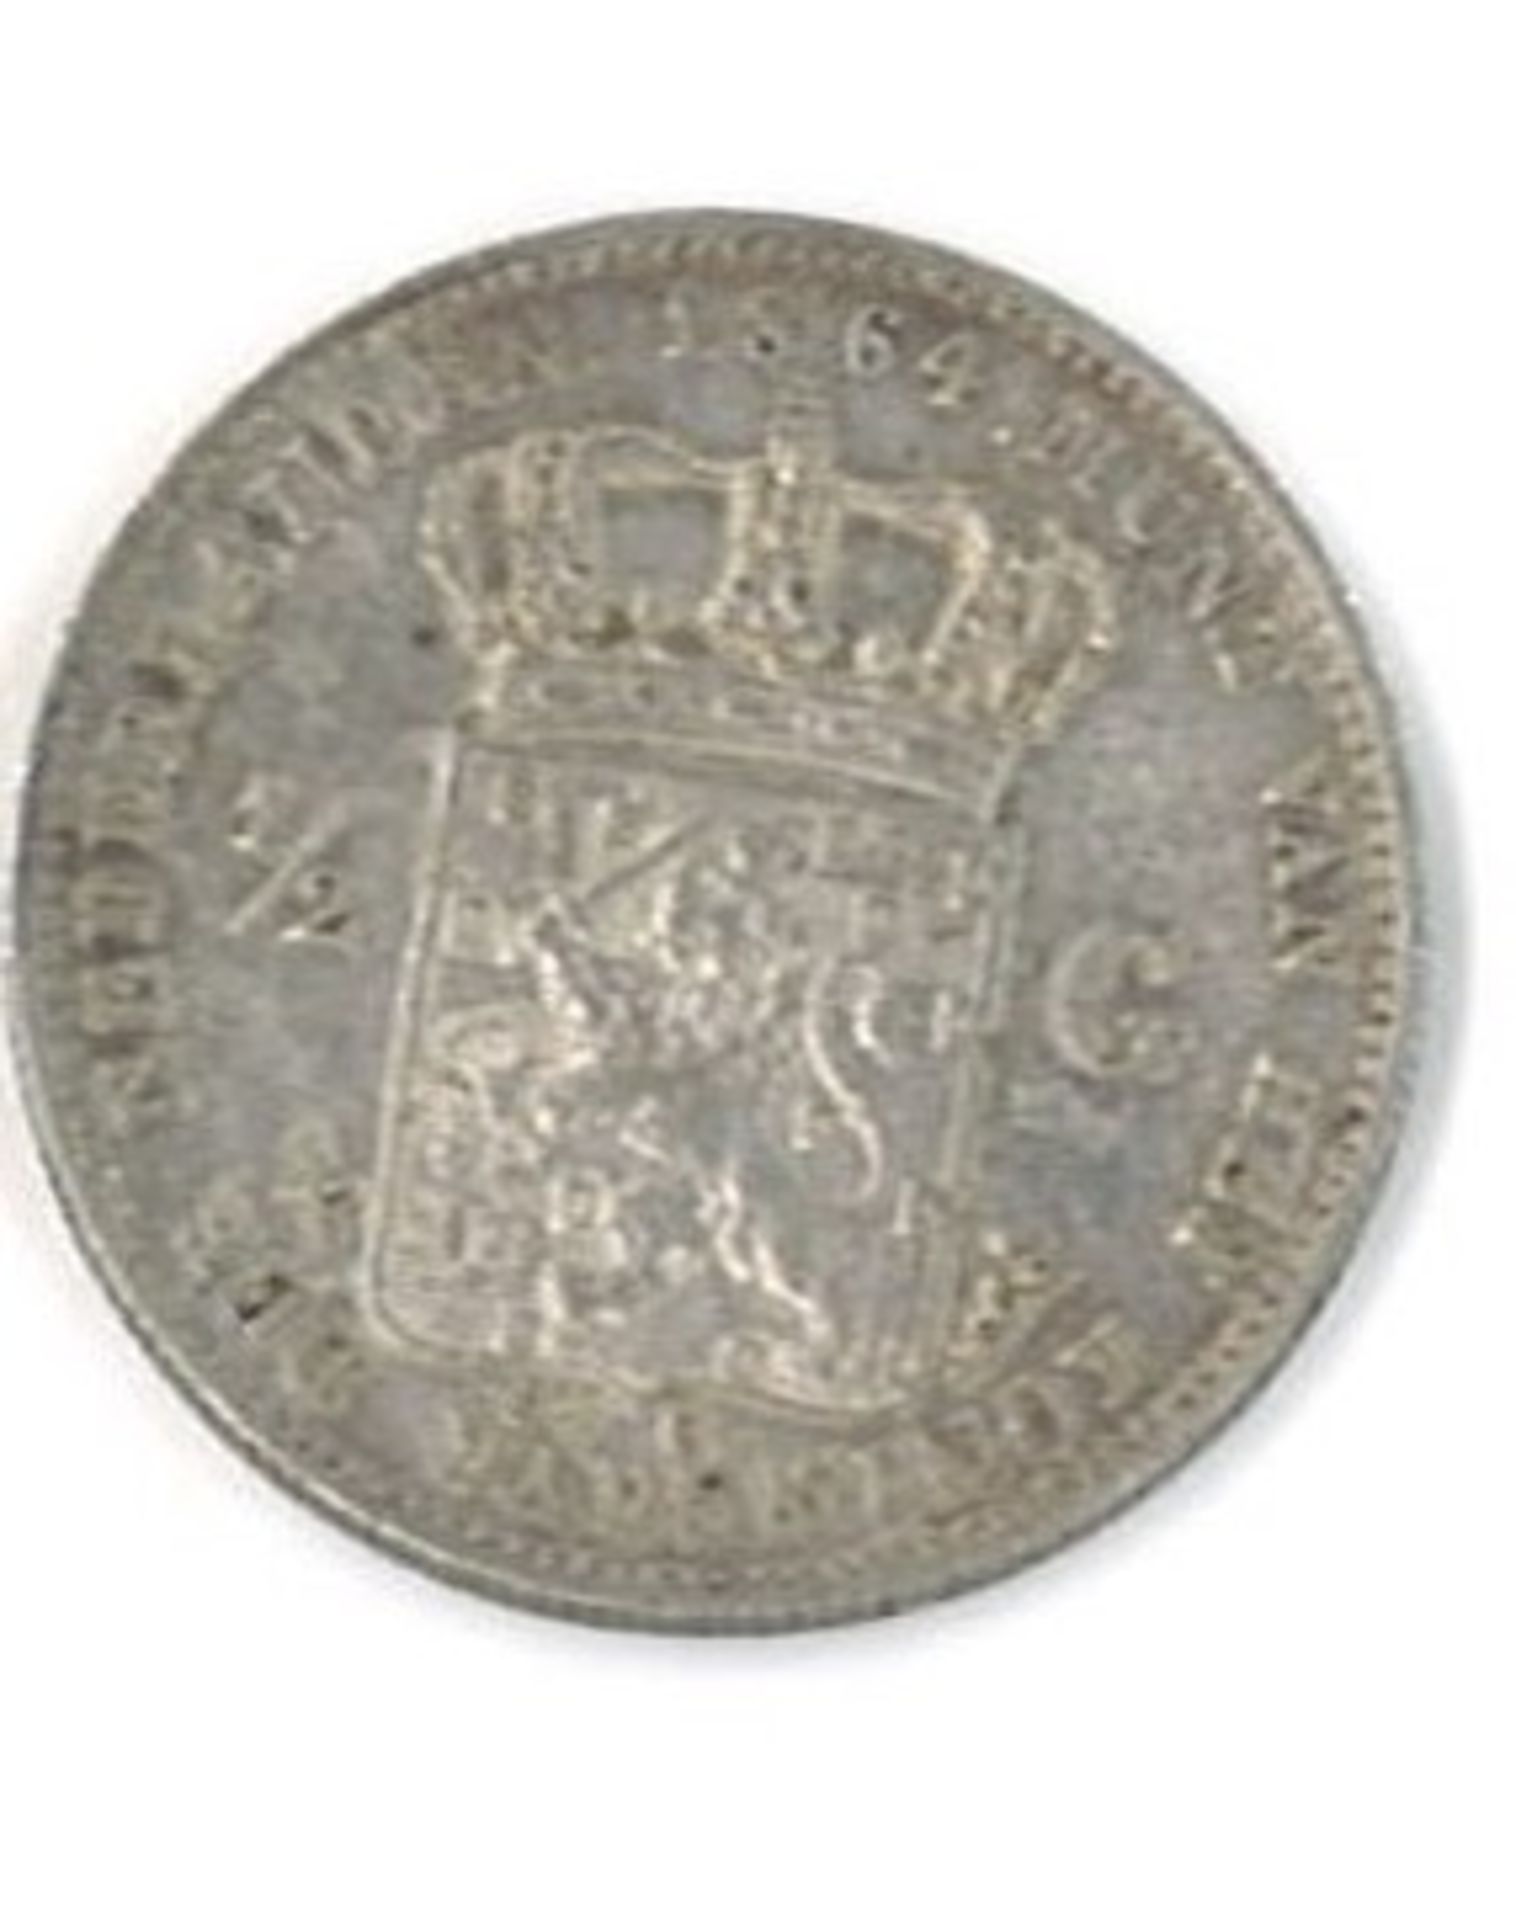 Niederlande Wilhelm II Silbermünze 1864. 1/2 Gulden. Zustand: ss-vz - Bild 2 aus 2